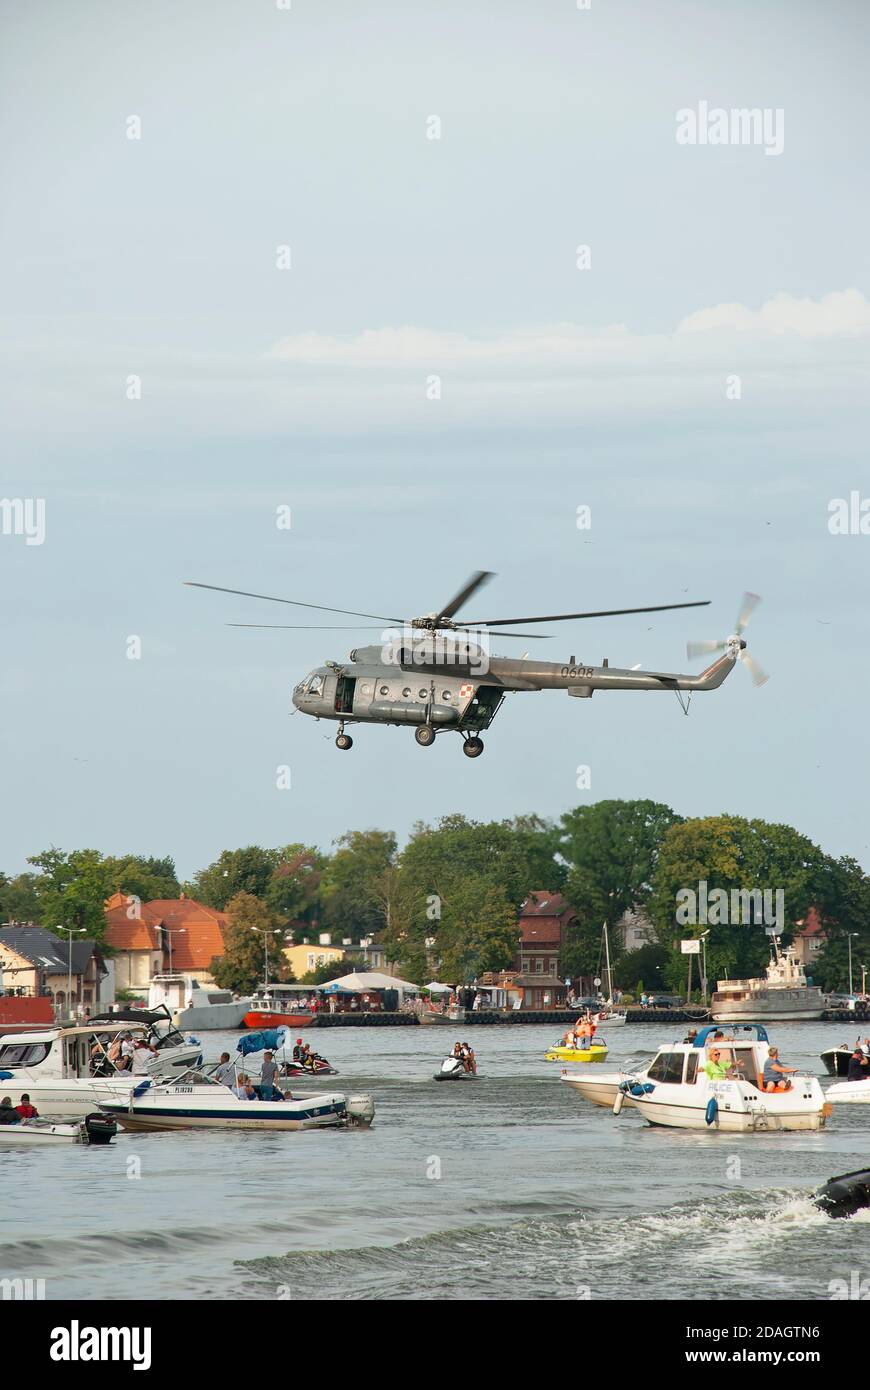 Picnic sull'acqua sotto l'elicottero militare mi-8. Foto scattata dopo il paracadute jumping show durante il Commando Fest di Dziwnów - Agosto 2020 Foto Stock